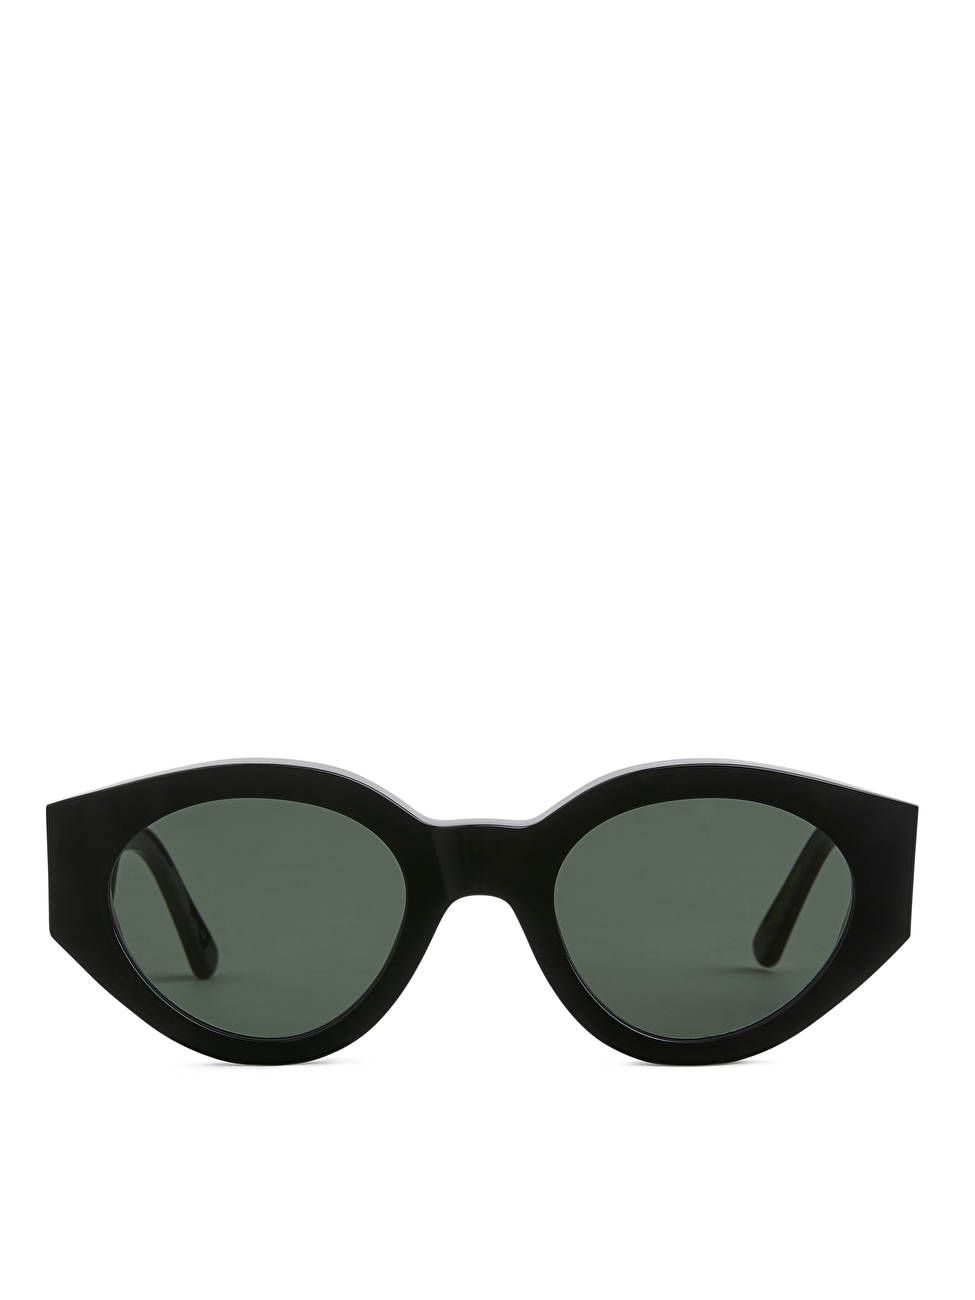 Sonnenbrille Polly von Monokel Eyewear | ARKET (EU)